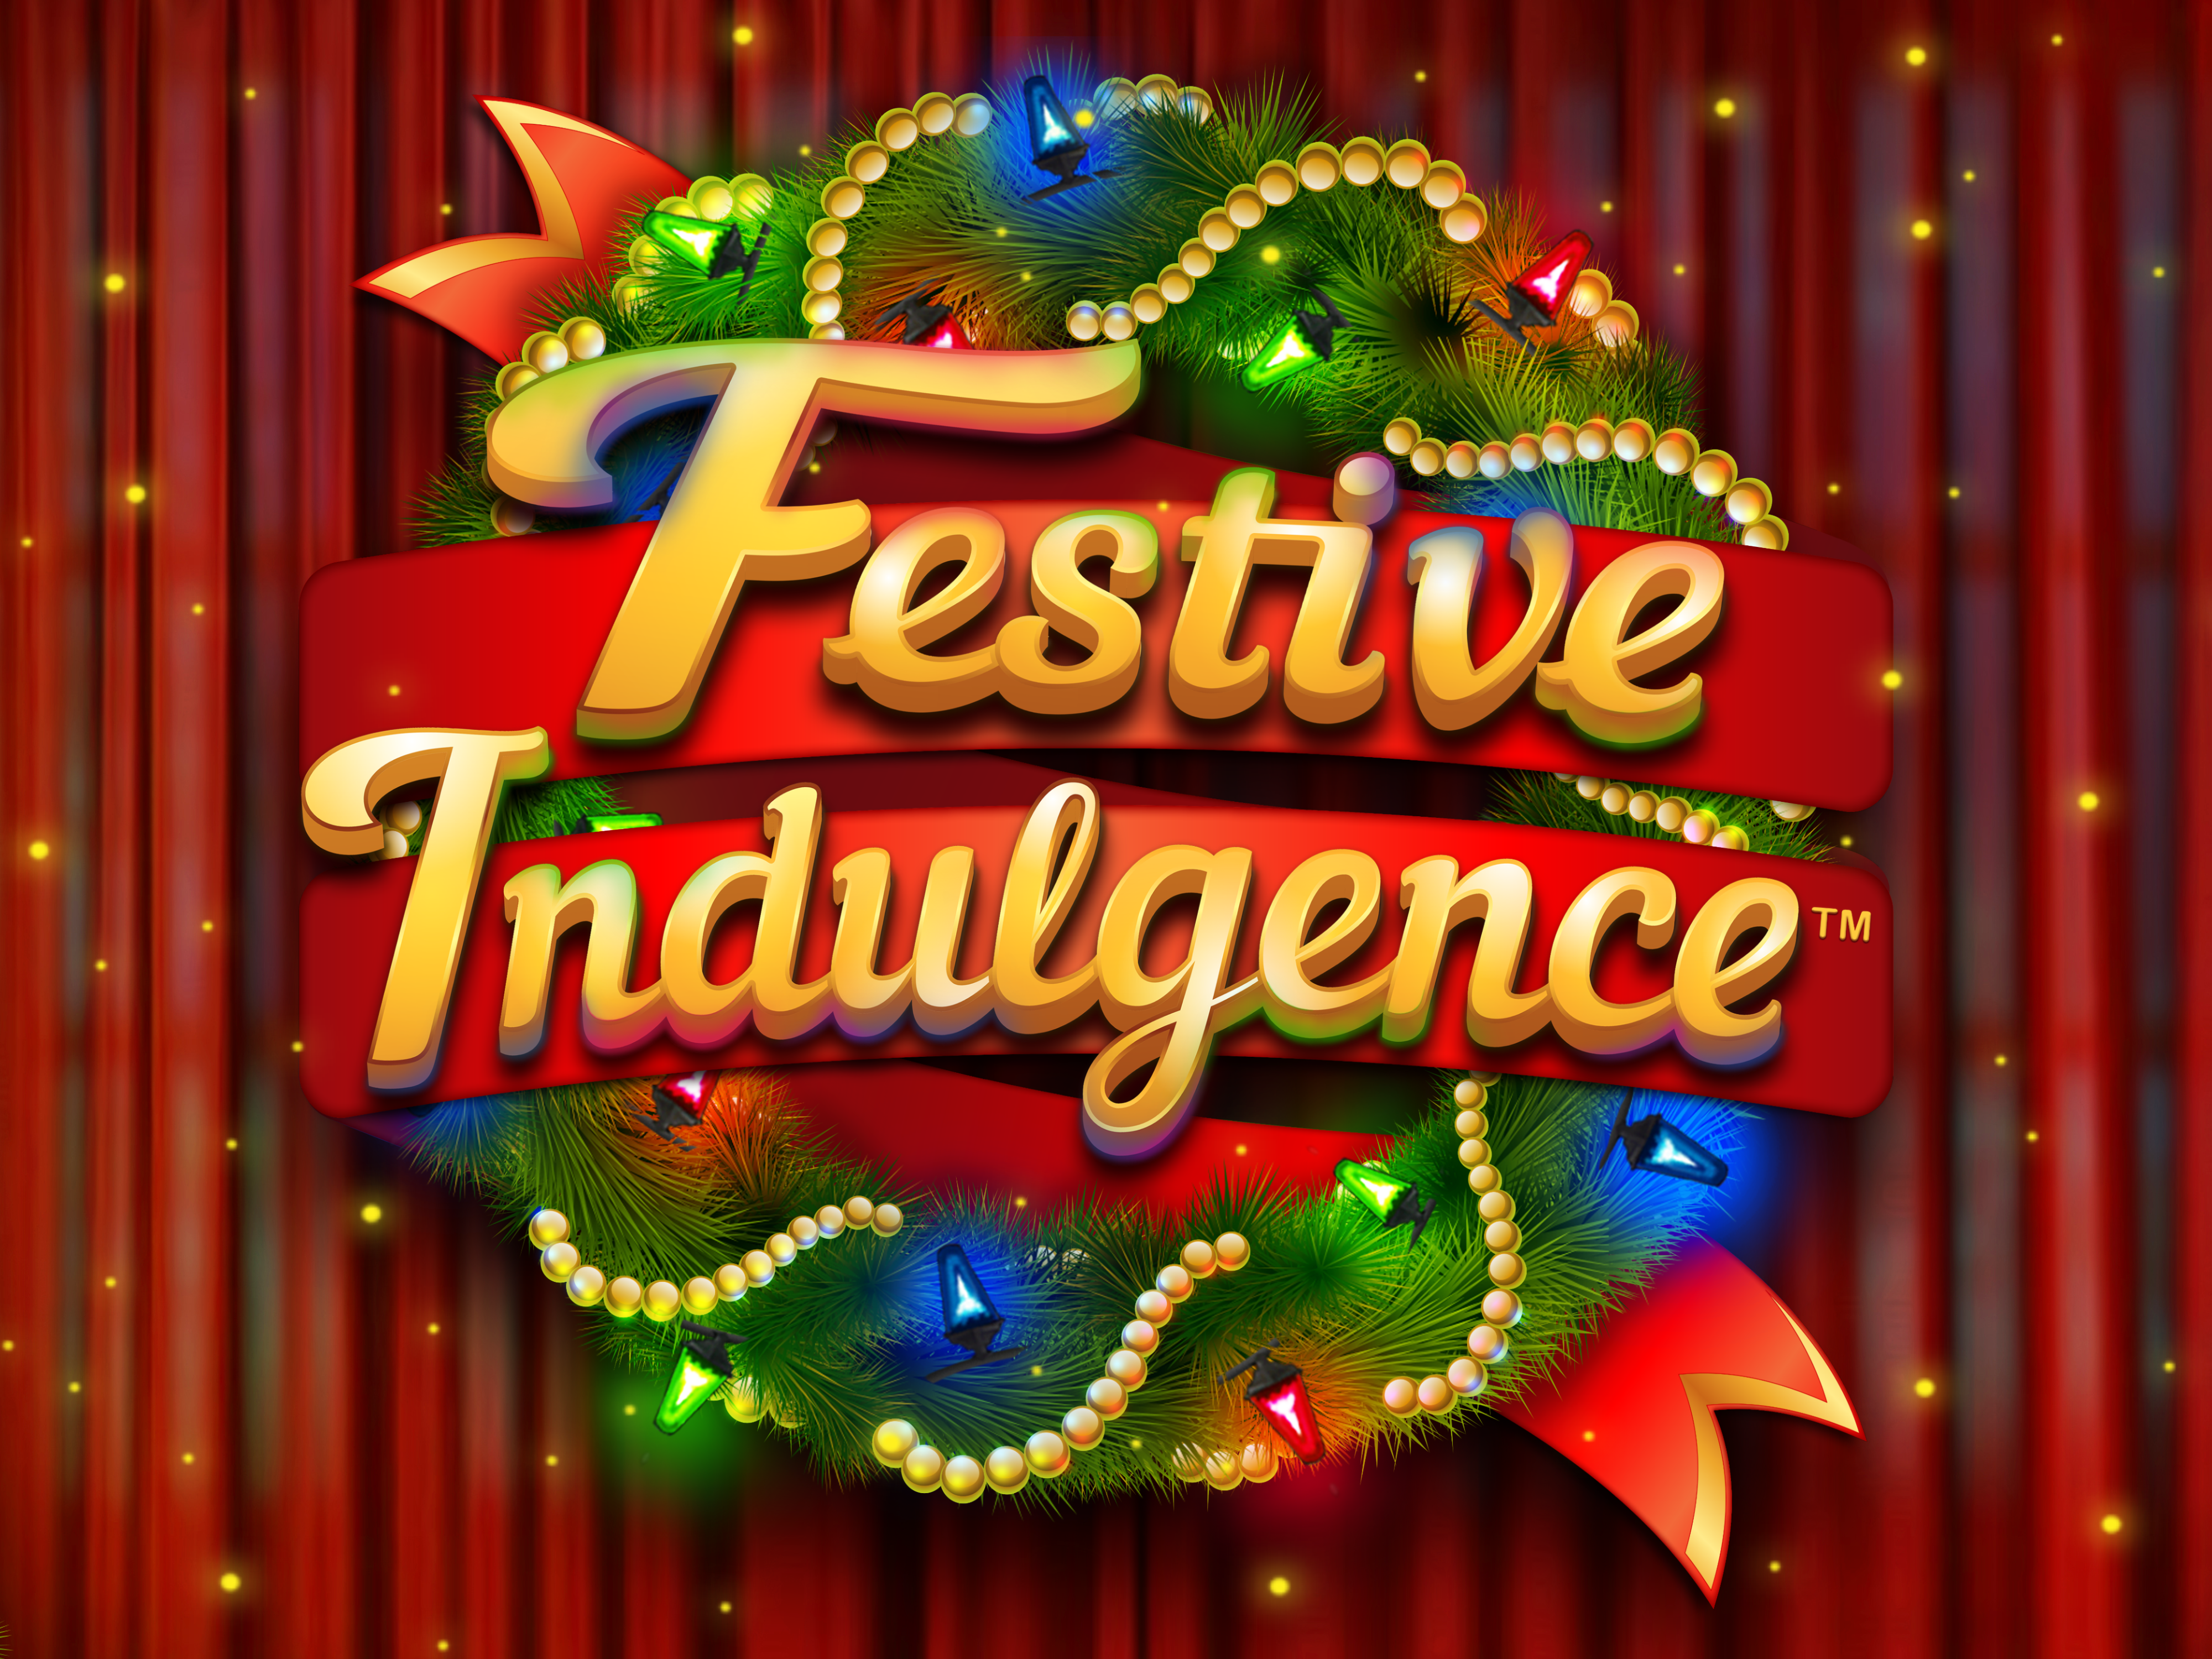 Festive Indulgence game logo